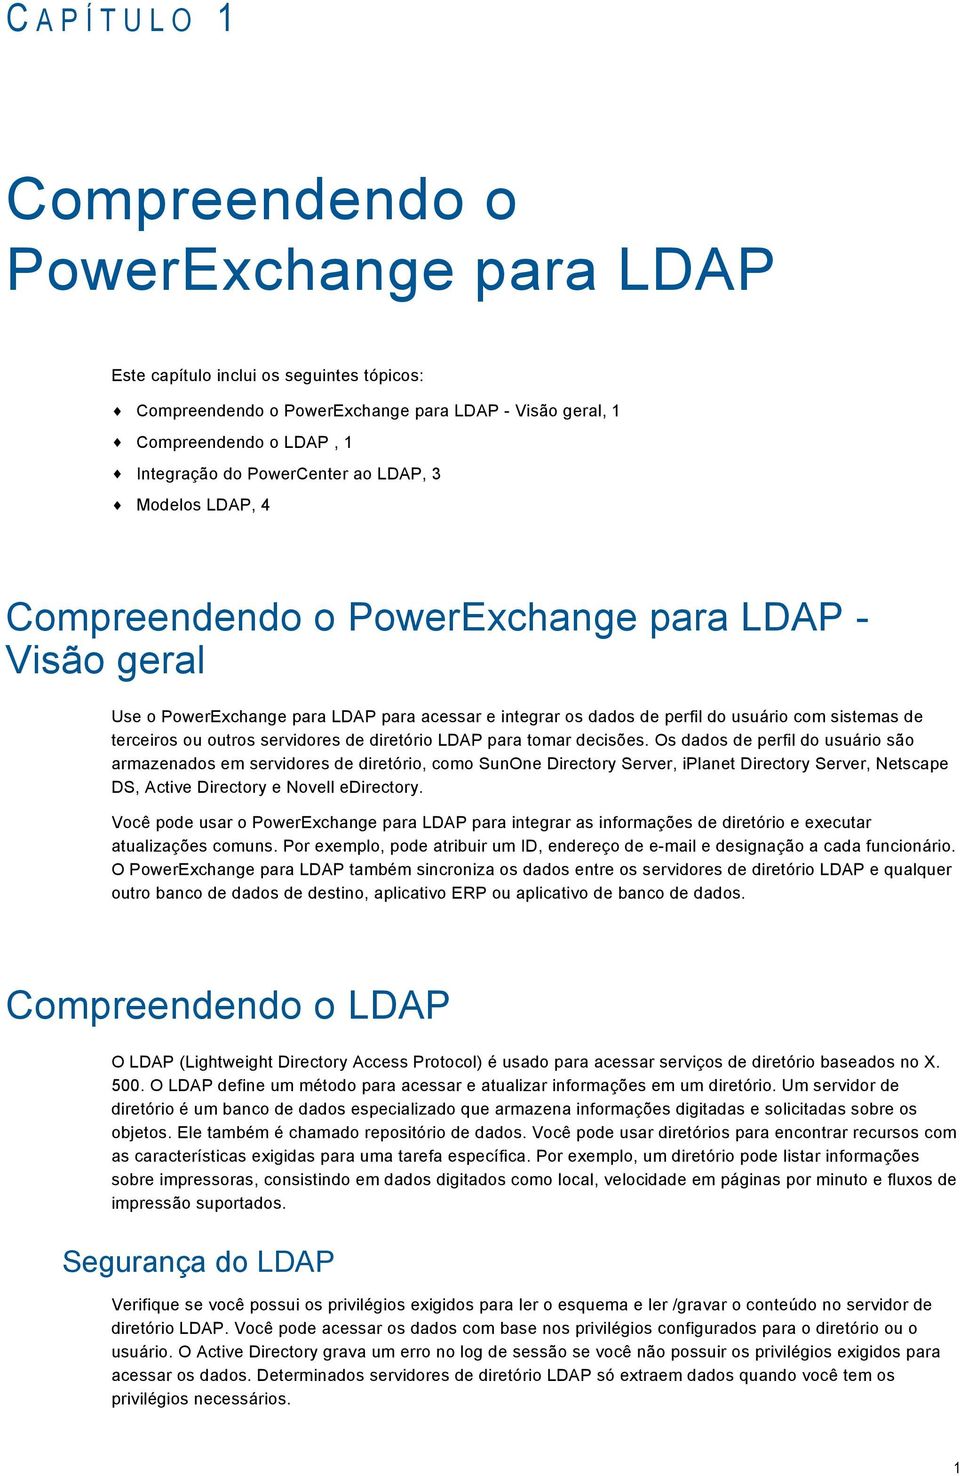 terceiros ou outros servidores de diretório LDAP para tomar decisões.